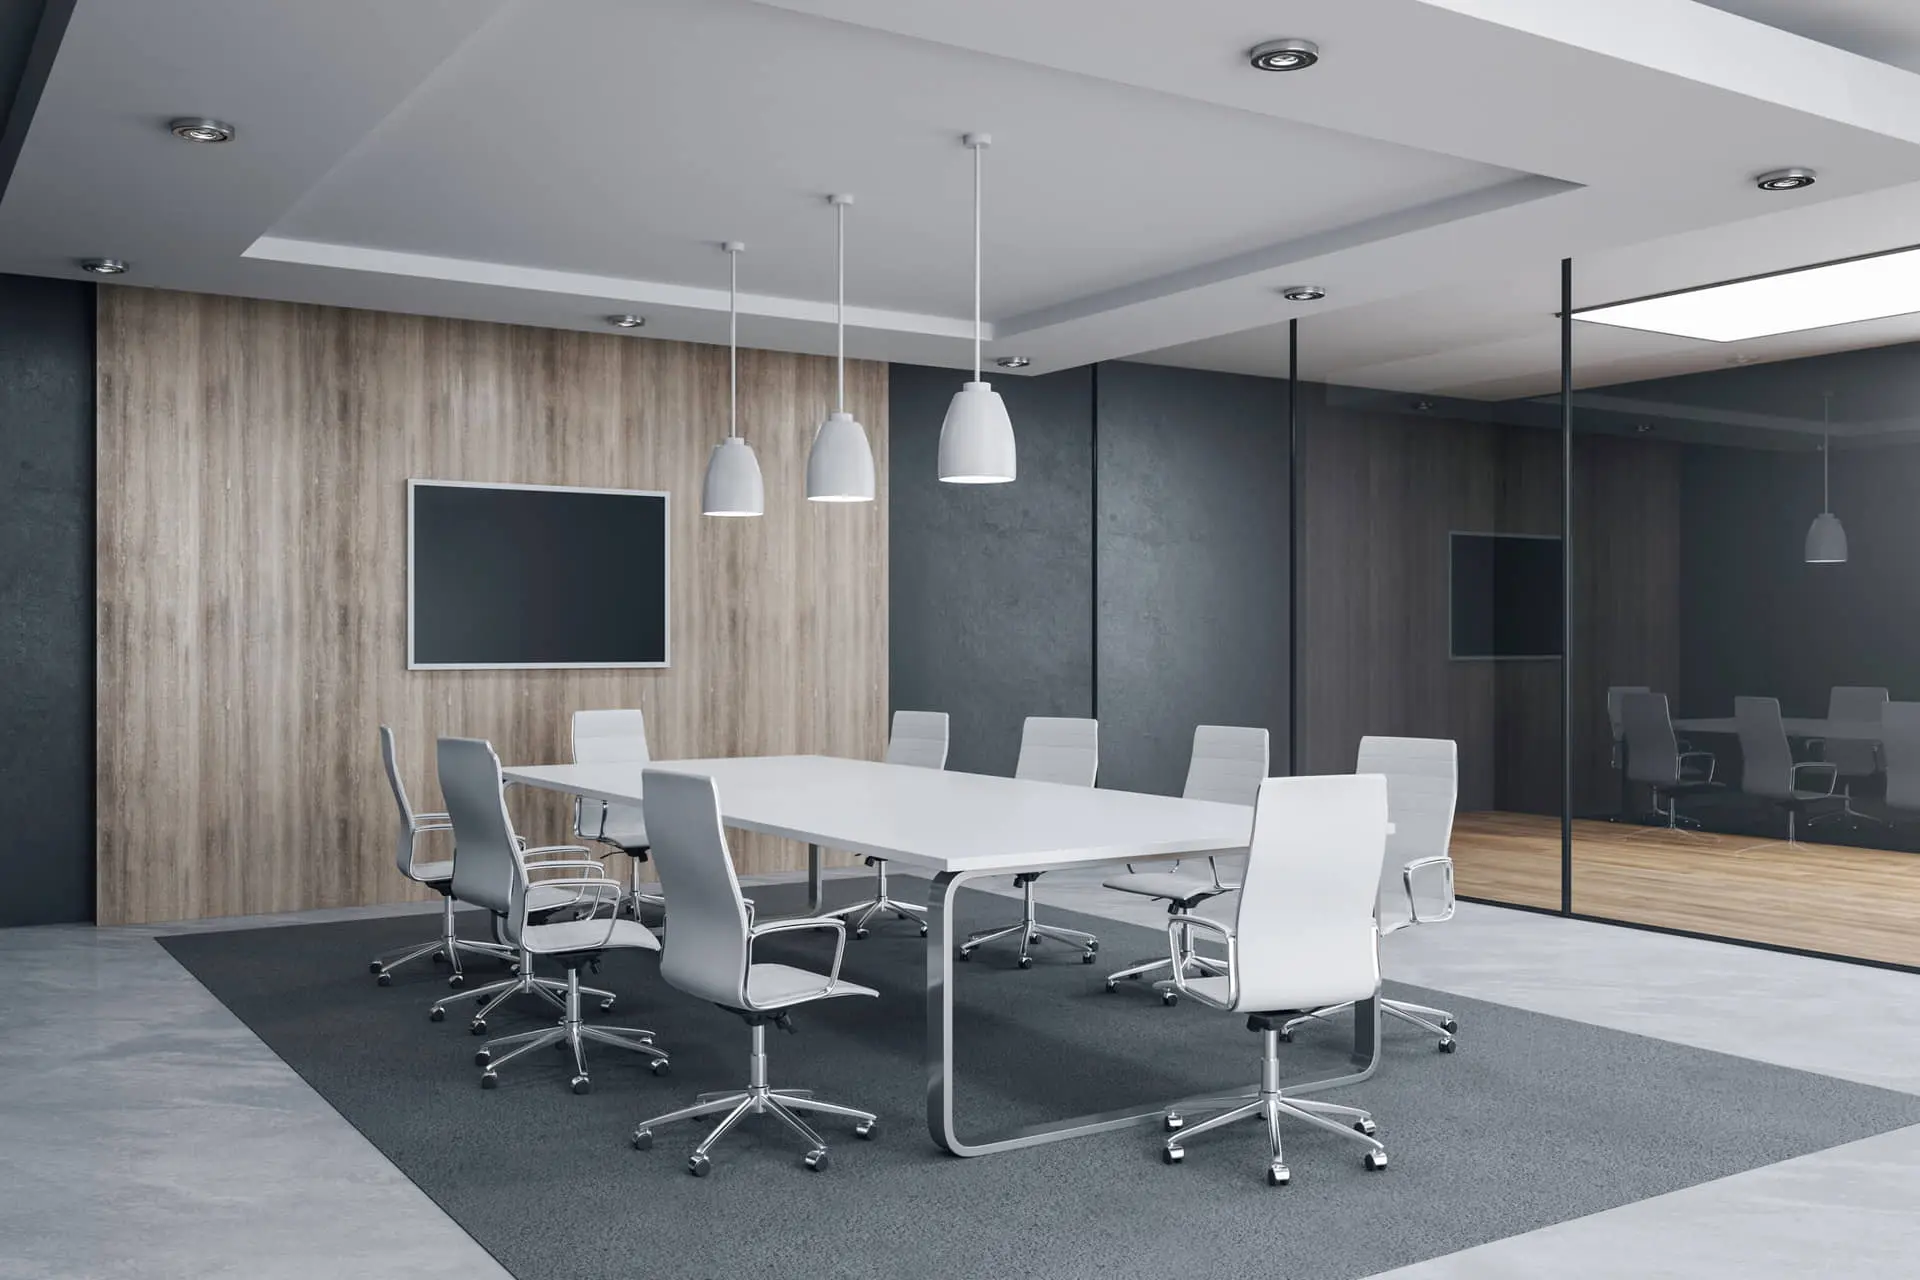 माइक्रोसीमेंट के ग्रे रंग के फर्श के साथ मीटिंग रूम